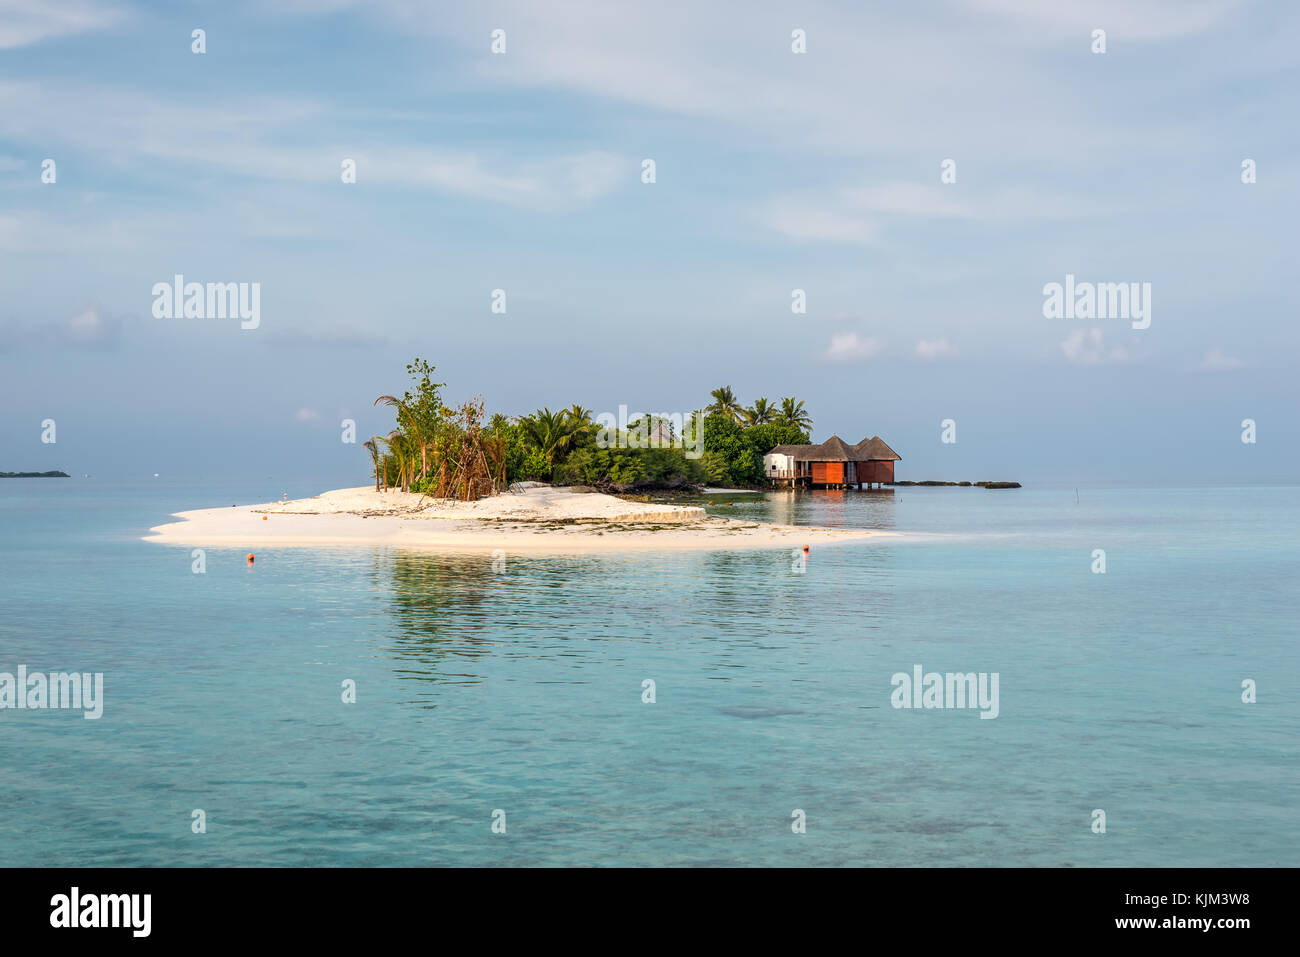 Paysage avec une petite île dans les Maldives, l'océan indien, l'Atoll de Kaafu, kuda huraa island Banque D'Images